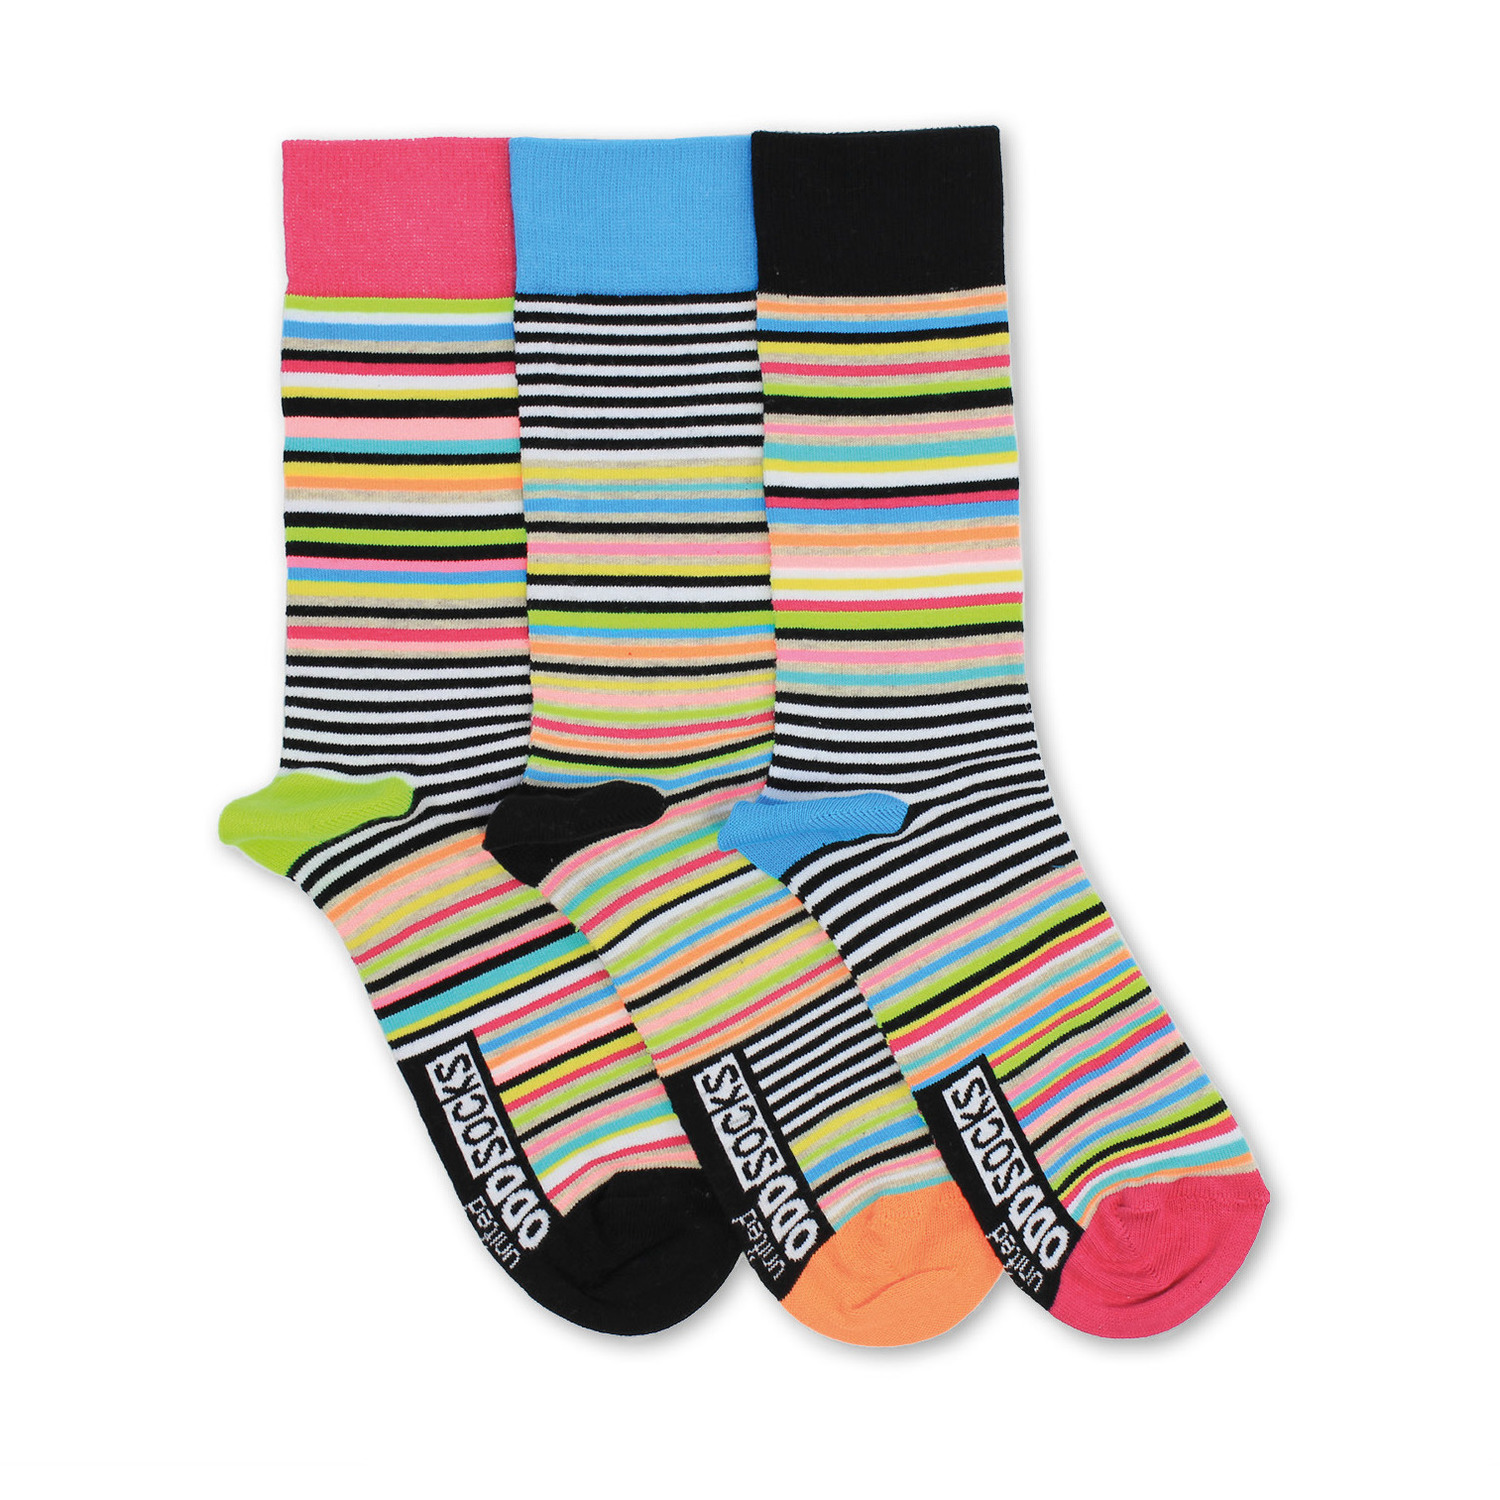 Socken Neon-Muster Füßlinge Oddsocks in 39-46 Strümpfe bunt lustig im 3er Set 